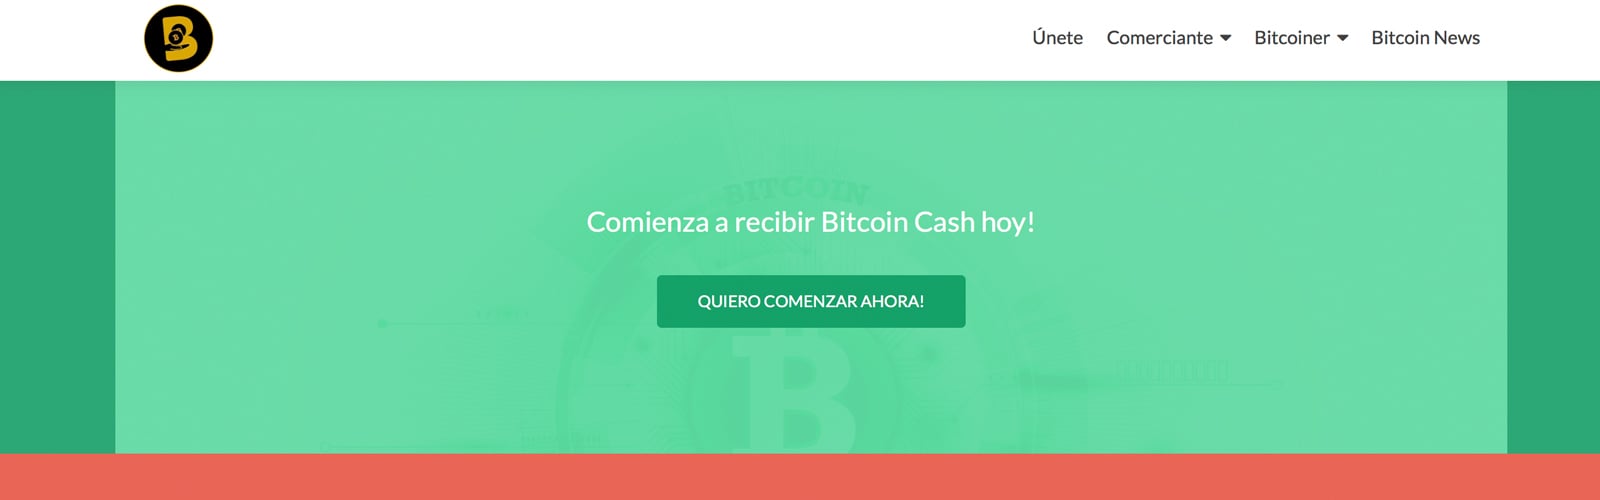 BCH Payment Processor Bitek Allows Colombian Merchants to Convert to Pesos